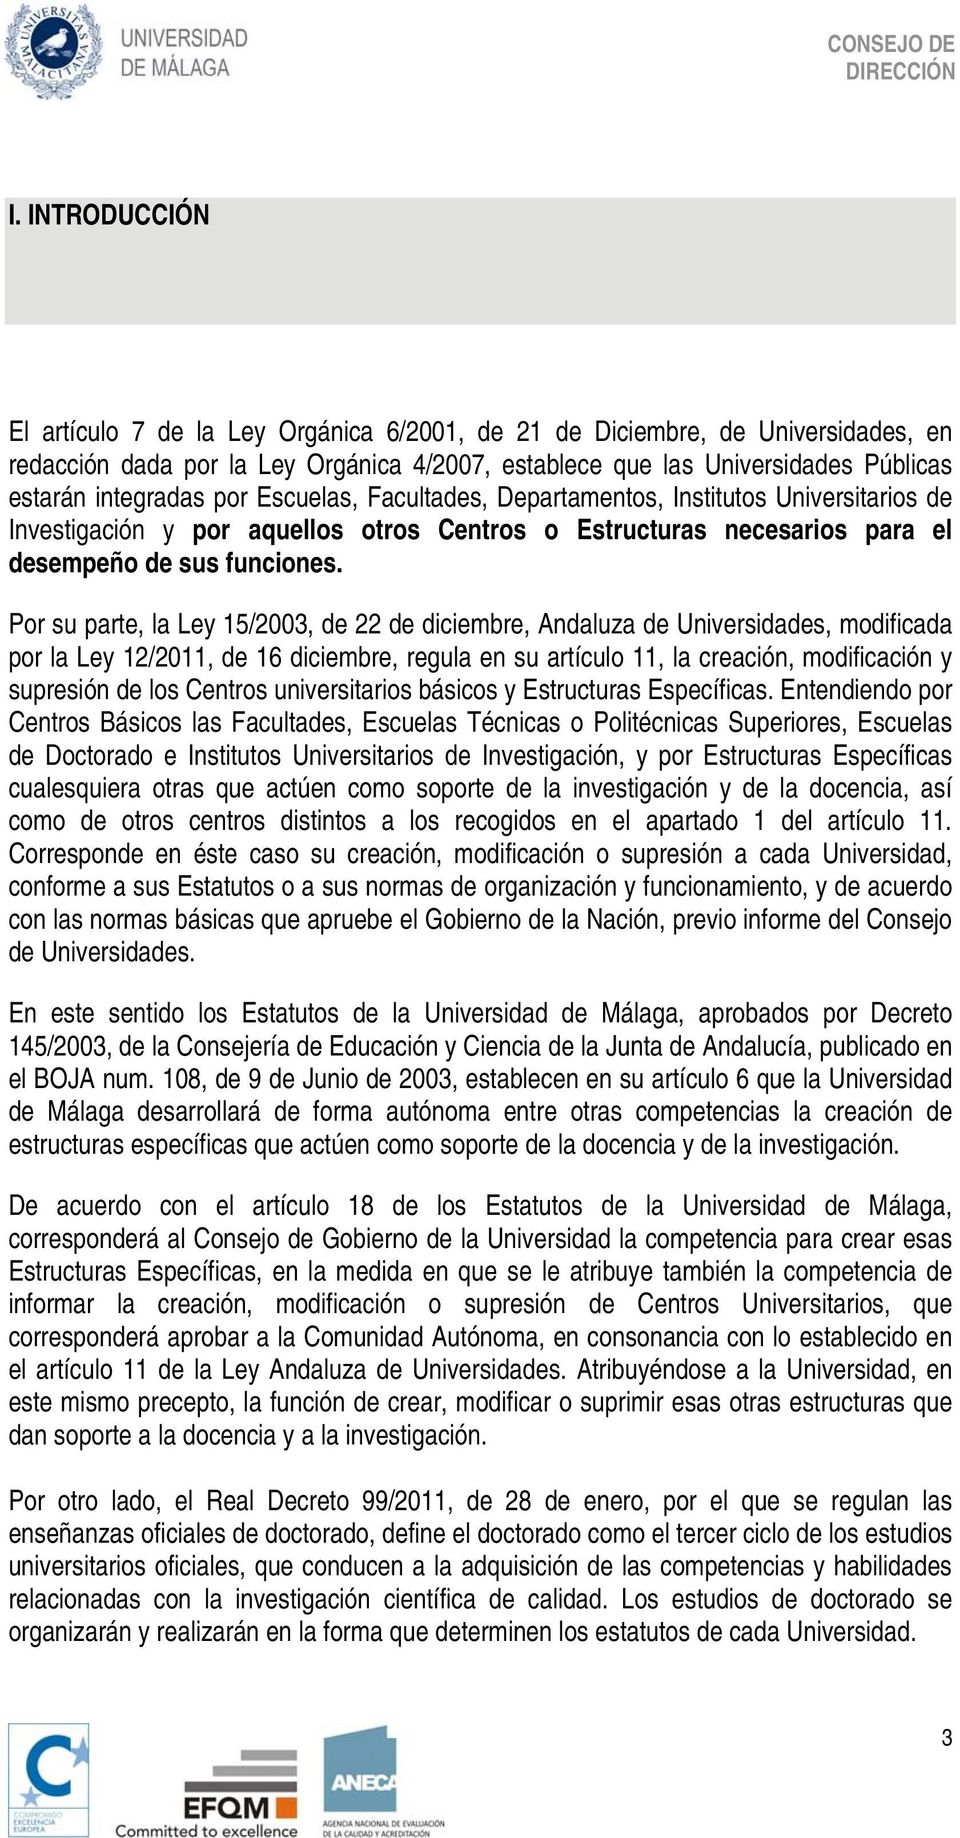 Por su parte, la Ley 15/2003, de 22 de diciembre, Andaluza de Universidades, modificada por la Ley 12/2011, de 16 diciembre, regula en su artículo 11, la creación, modificación y supresión de los